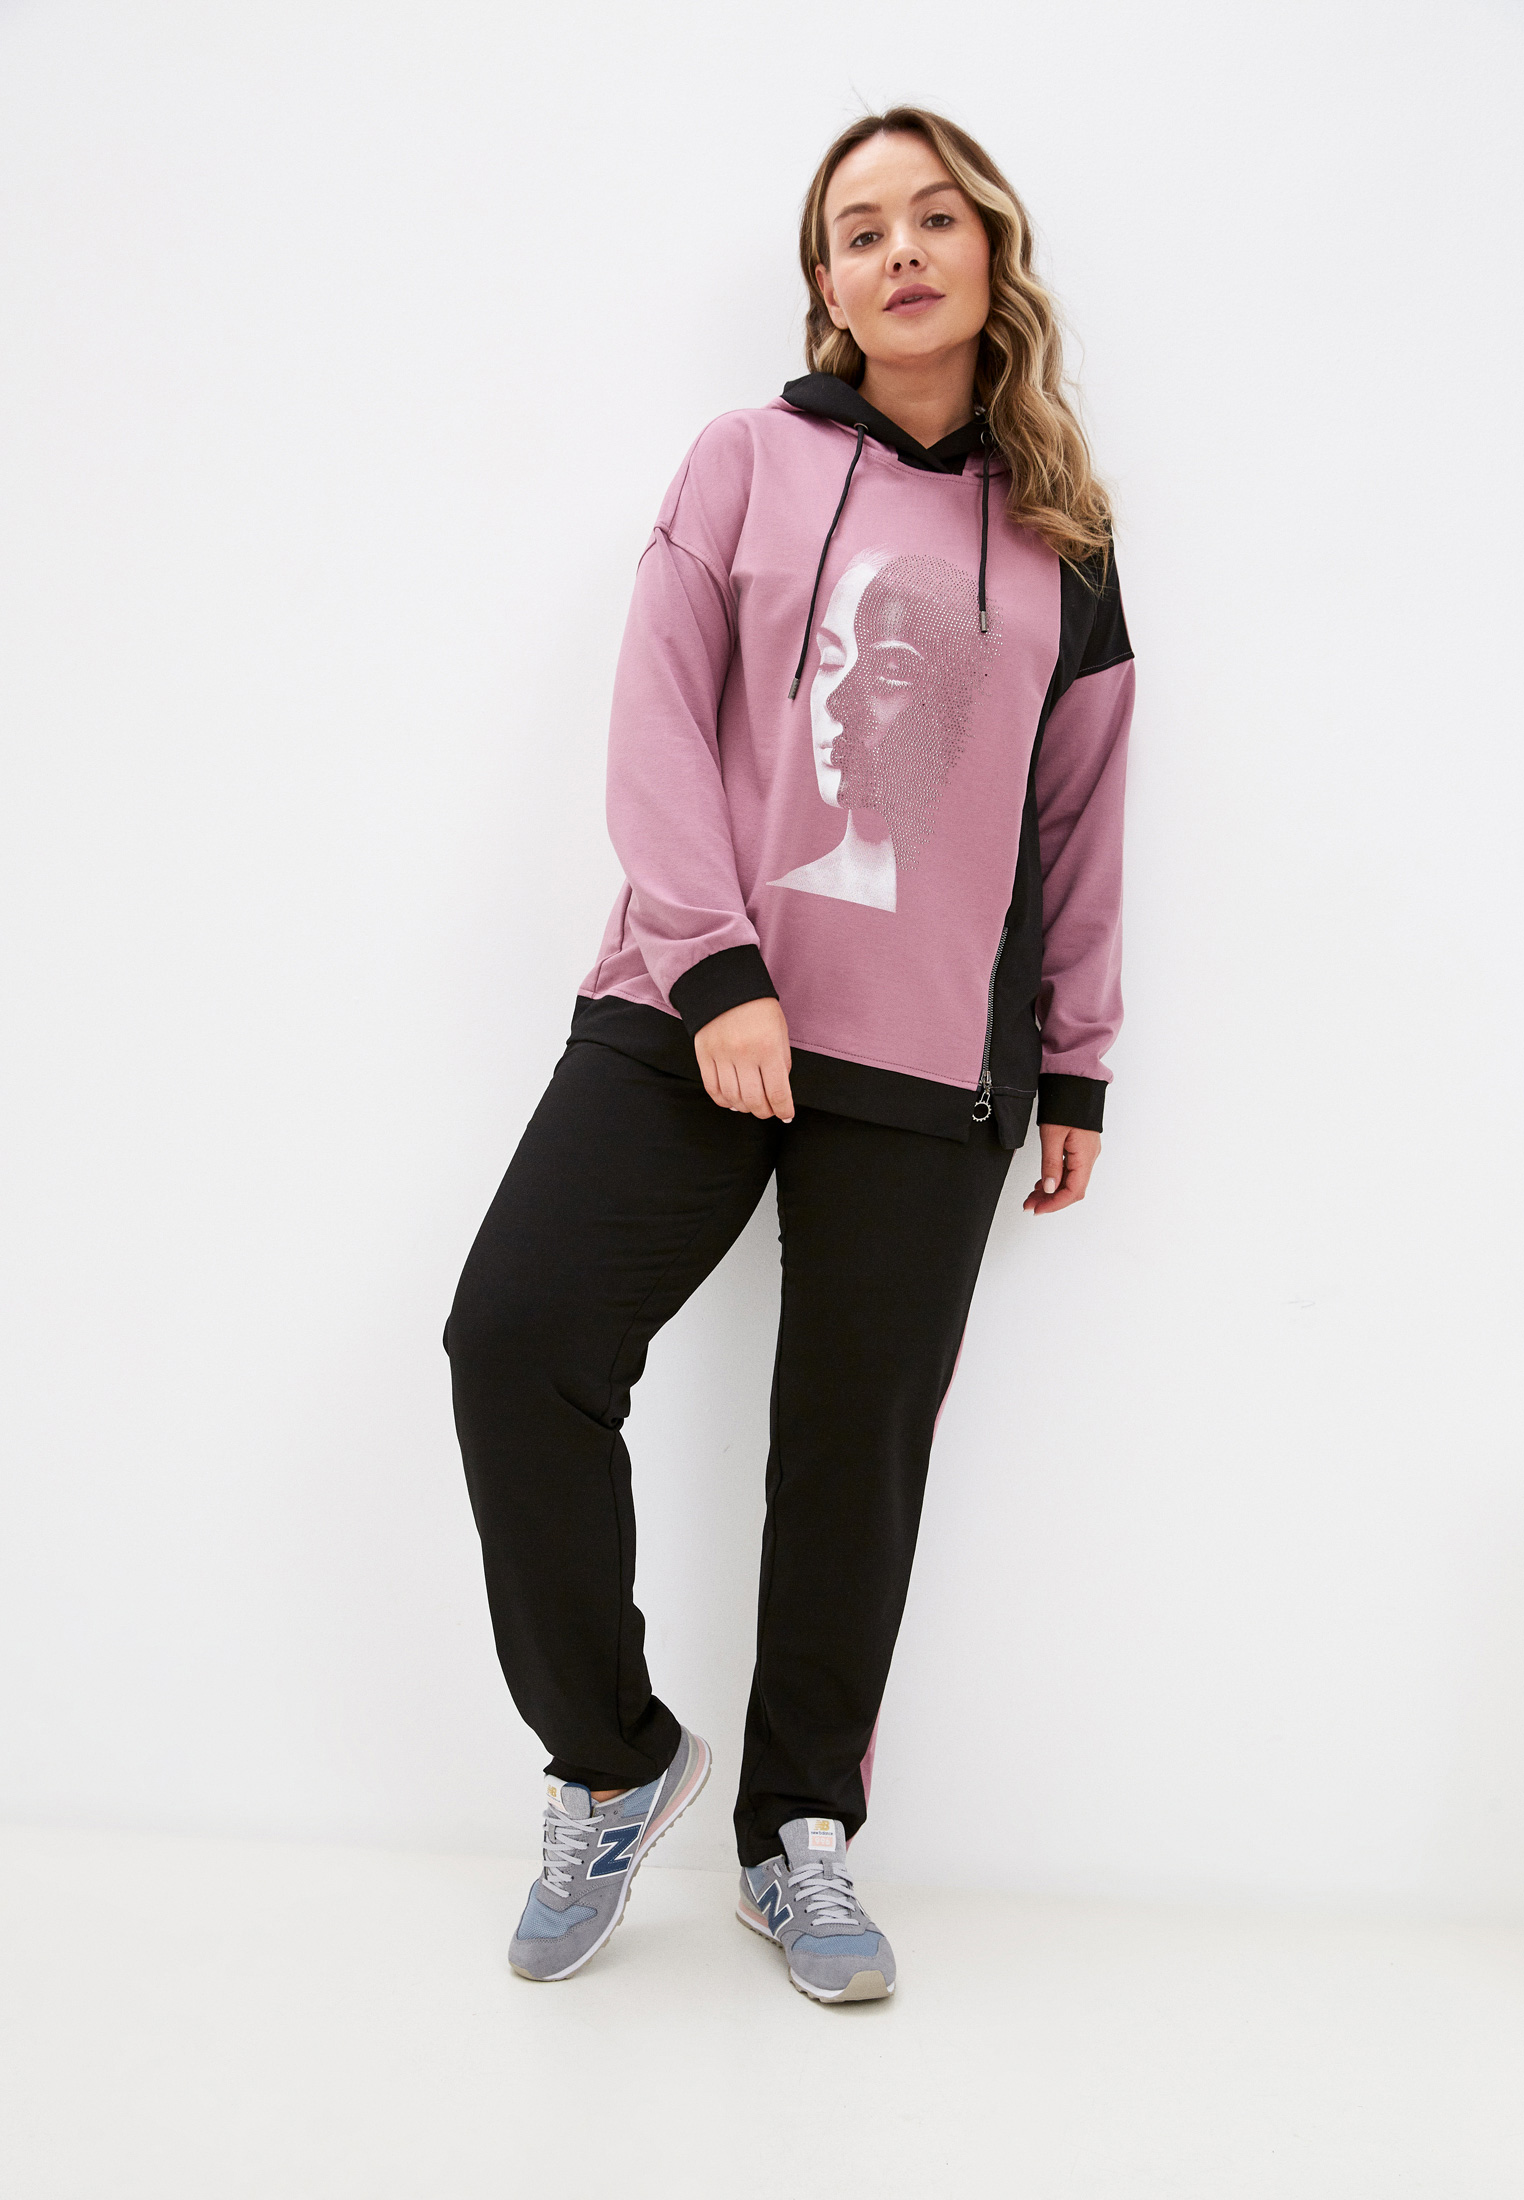 Костюм спортивный Adele Fashion, цвет: фиолетовый, черный, MP002XW07RGK — купить в интернет-магазине Lamoda